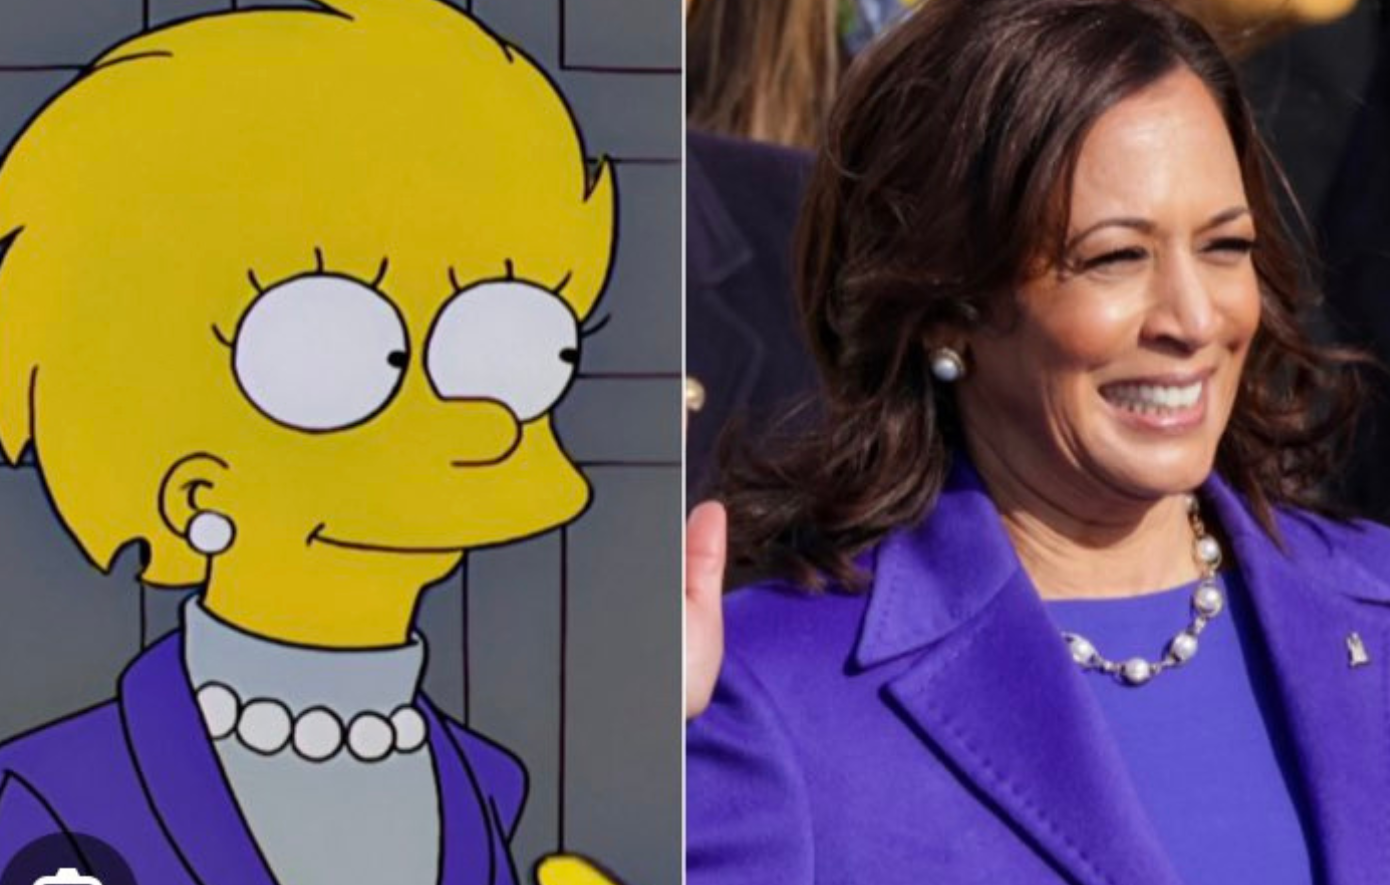 Οι Simpsons πρόβλεψαν και την υποψηφιότητα της Κάμαλα Χάρις για την προεδρία των ΗΠΑ